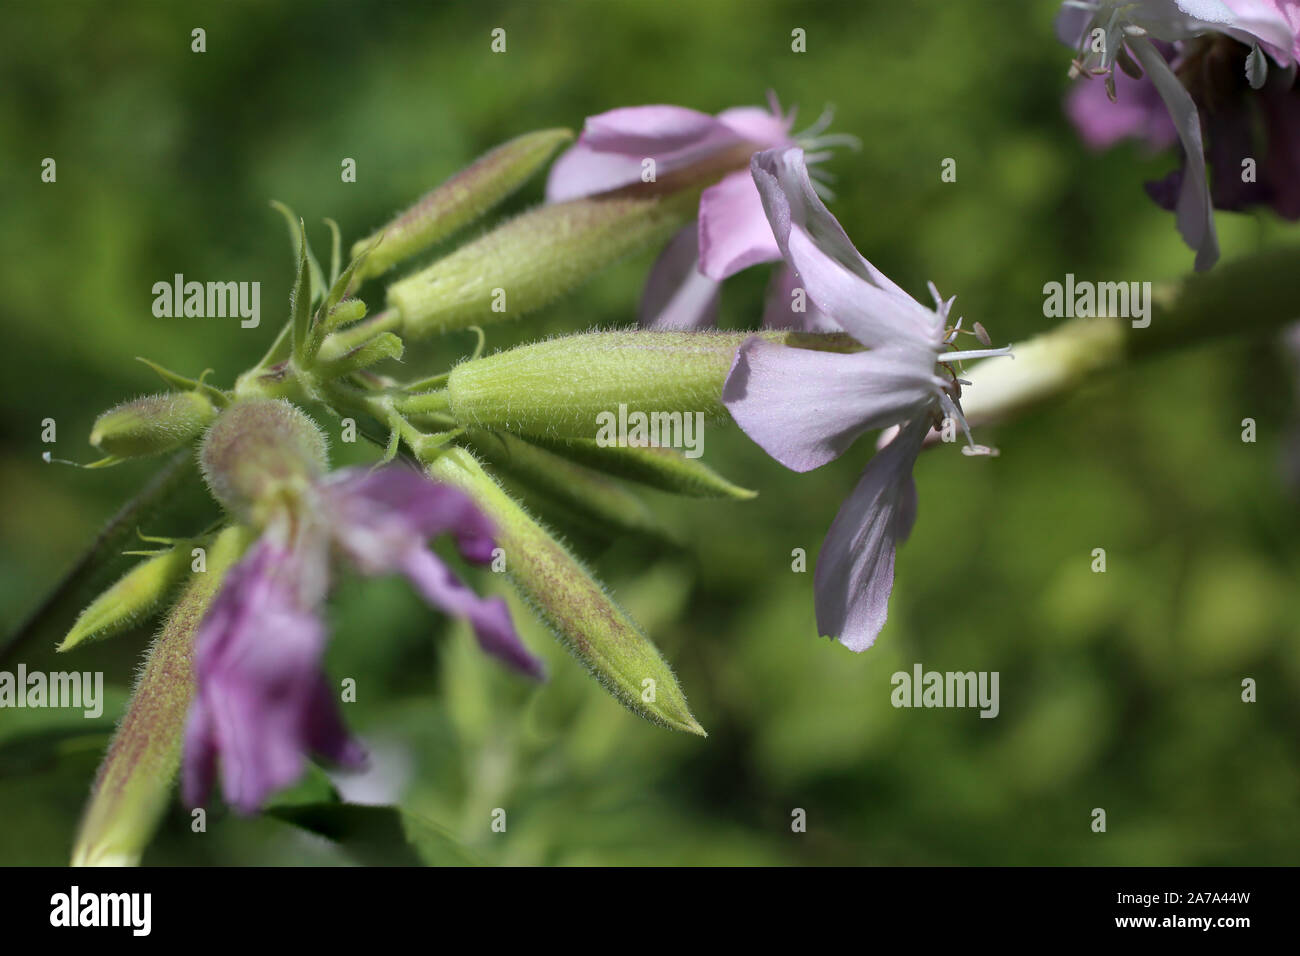 Saponaria officinalis - wild flower Stock Photo